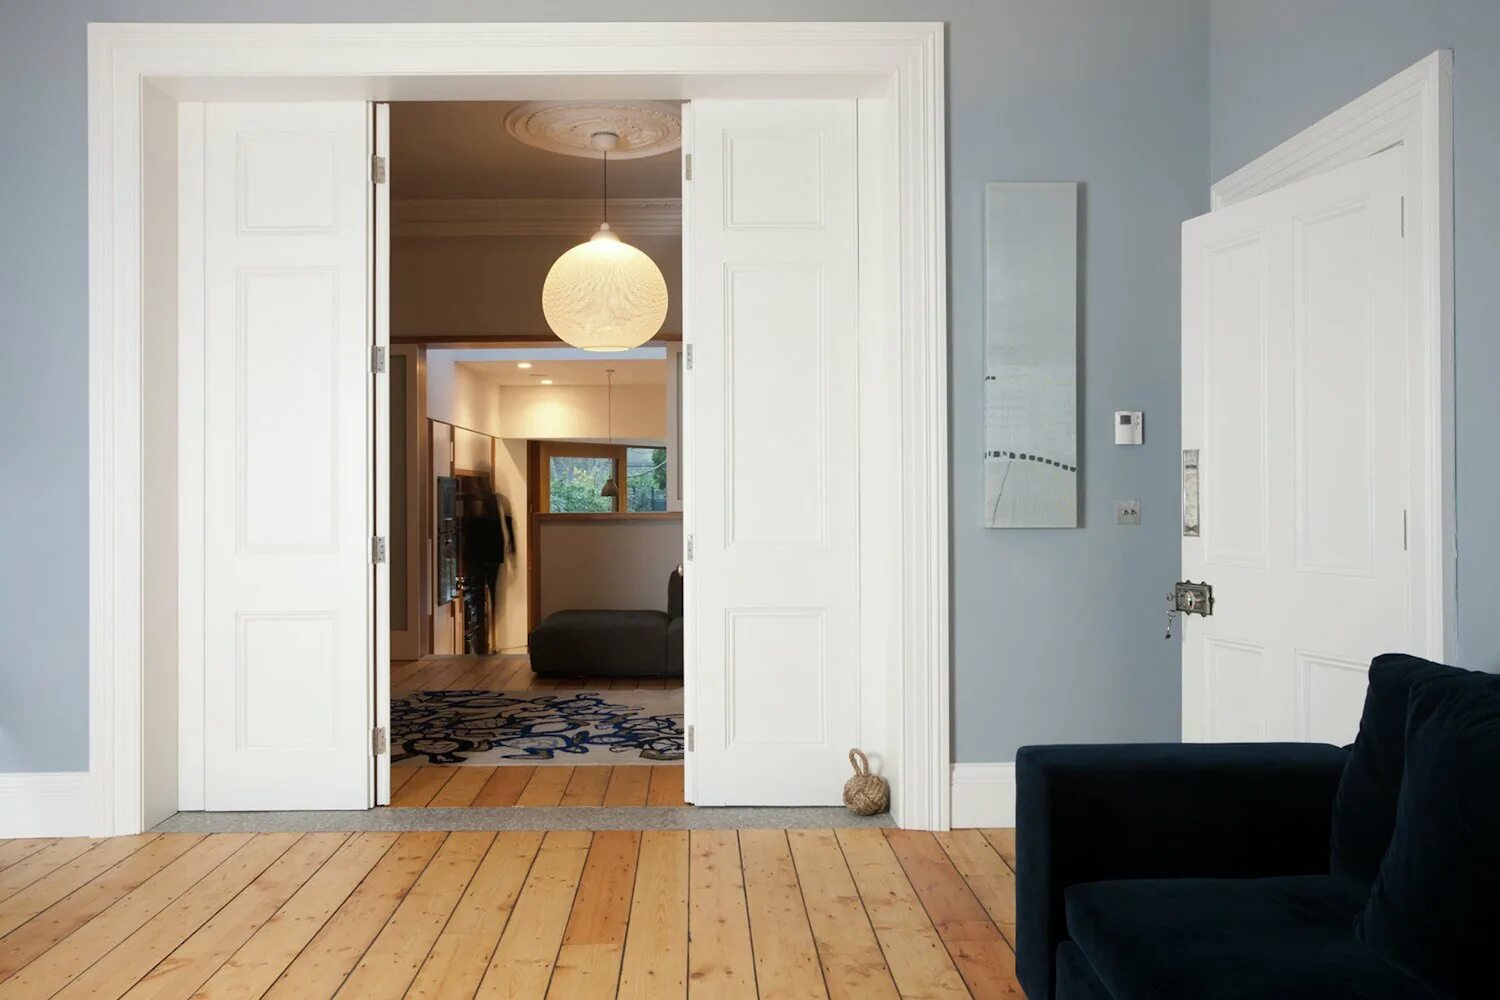 Двери в современном интерьере. Открытая дверь в квартиру. Открытая дверь в интерьере. Светлые двери в интерьере.